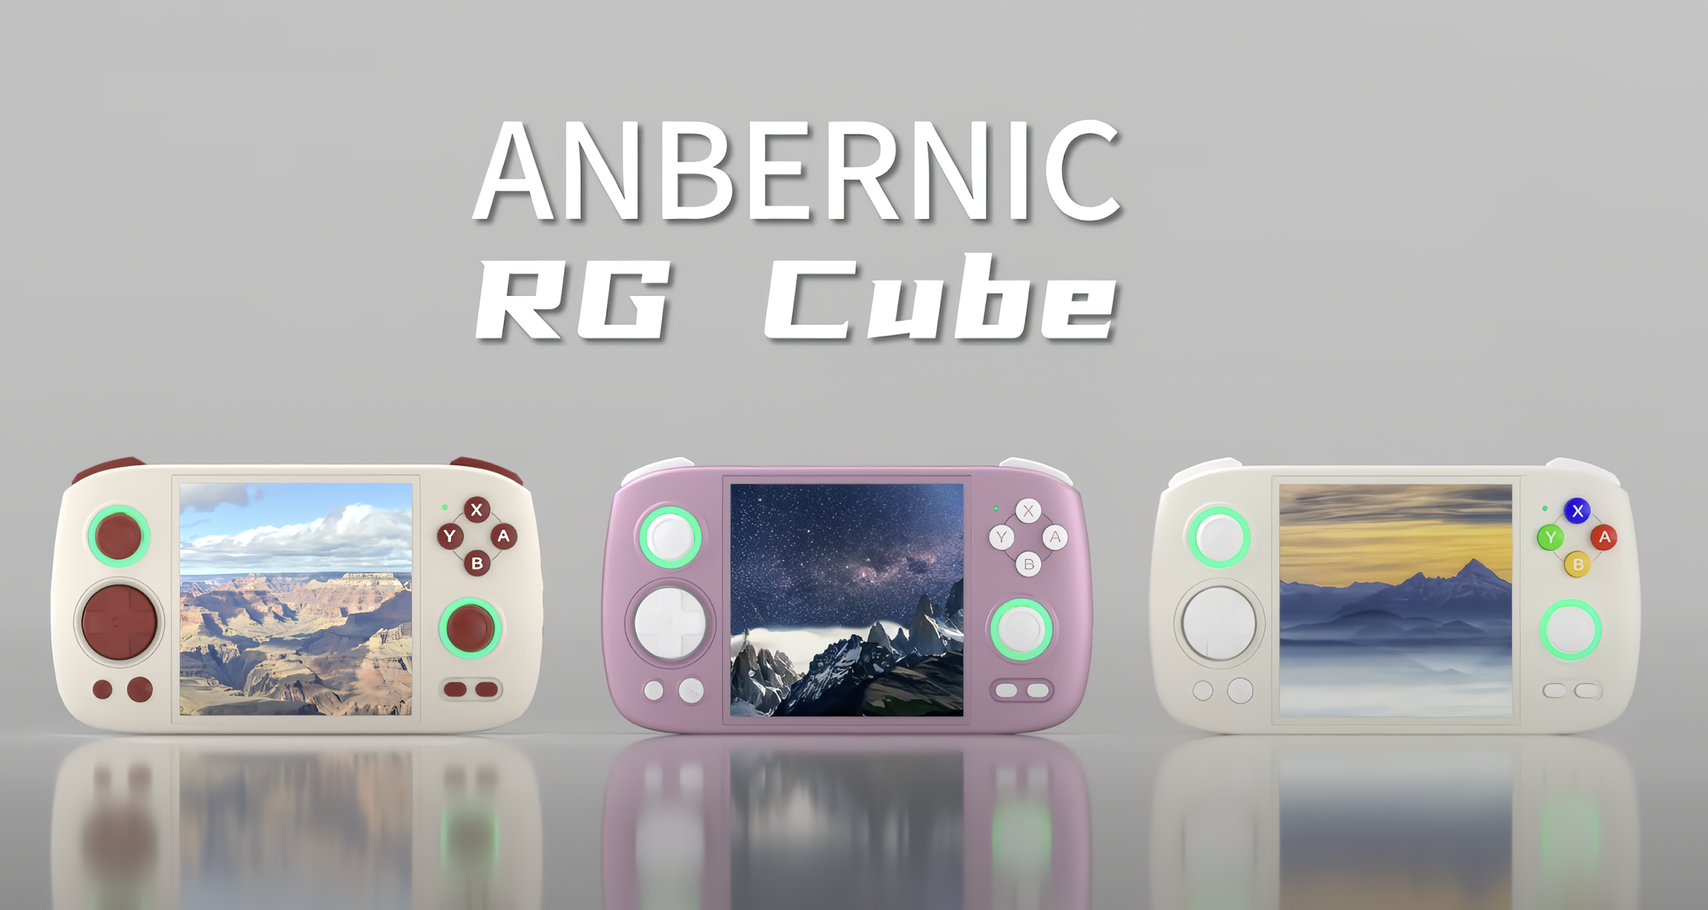 Anbernic RG Cube-spilkonsollen til retrospilentusiaster er blevet afsløret